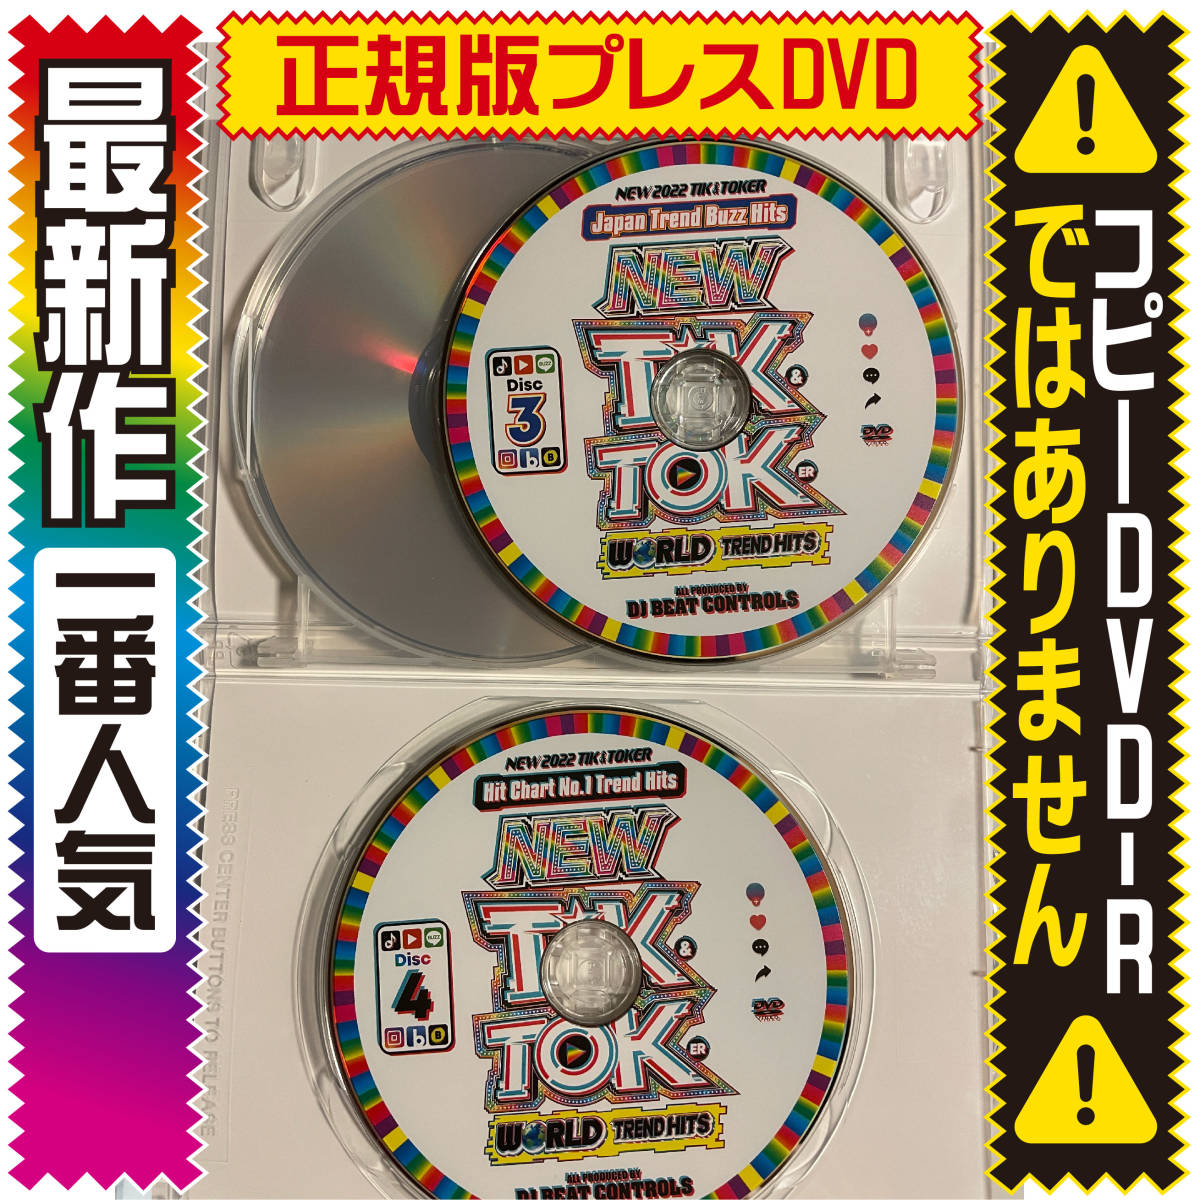 【洋楽DVD】New TikToker World Trend Hits★BTS Proof★正規版プレス盤DVD